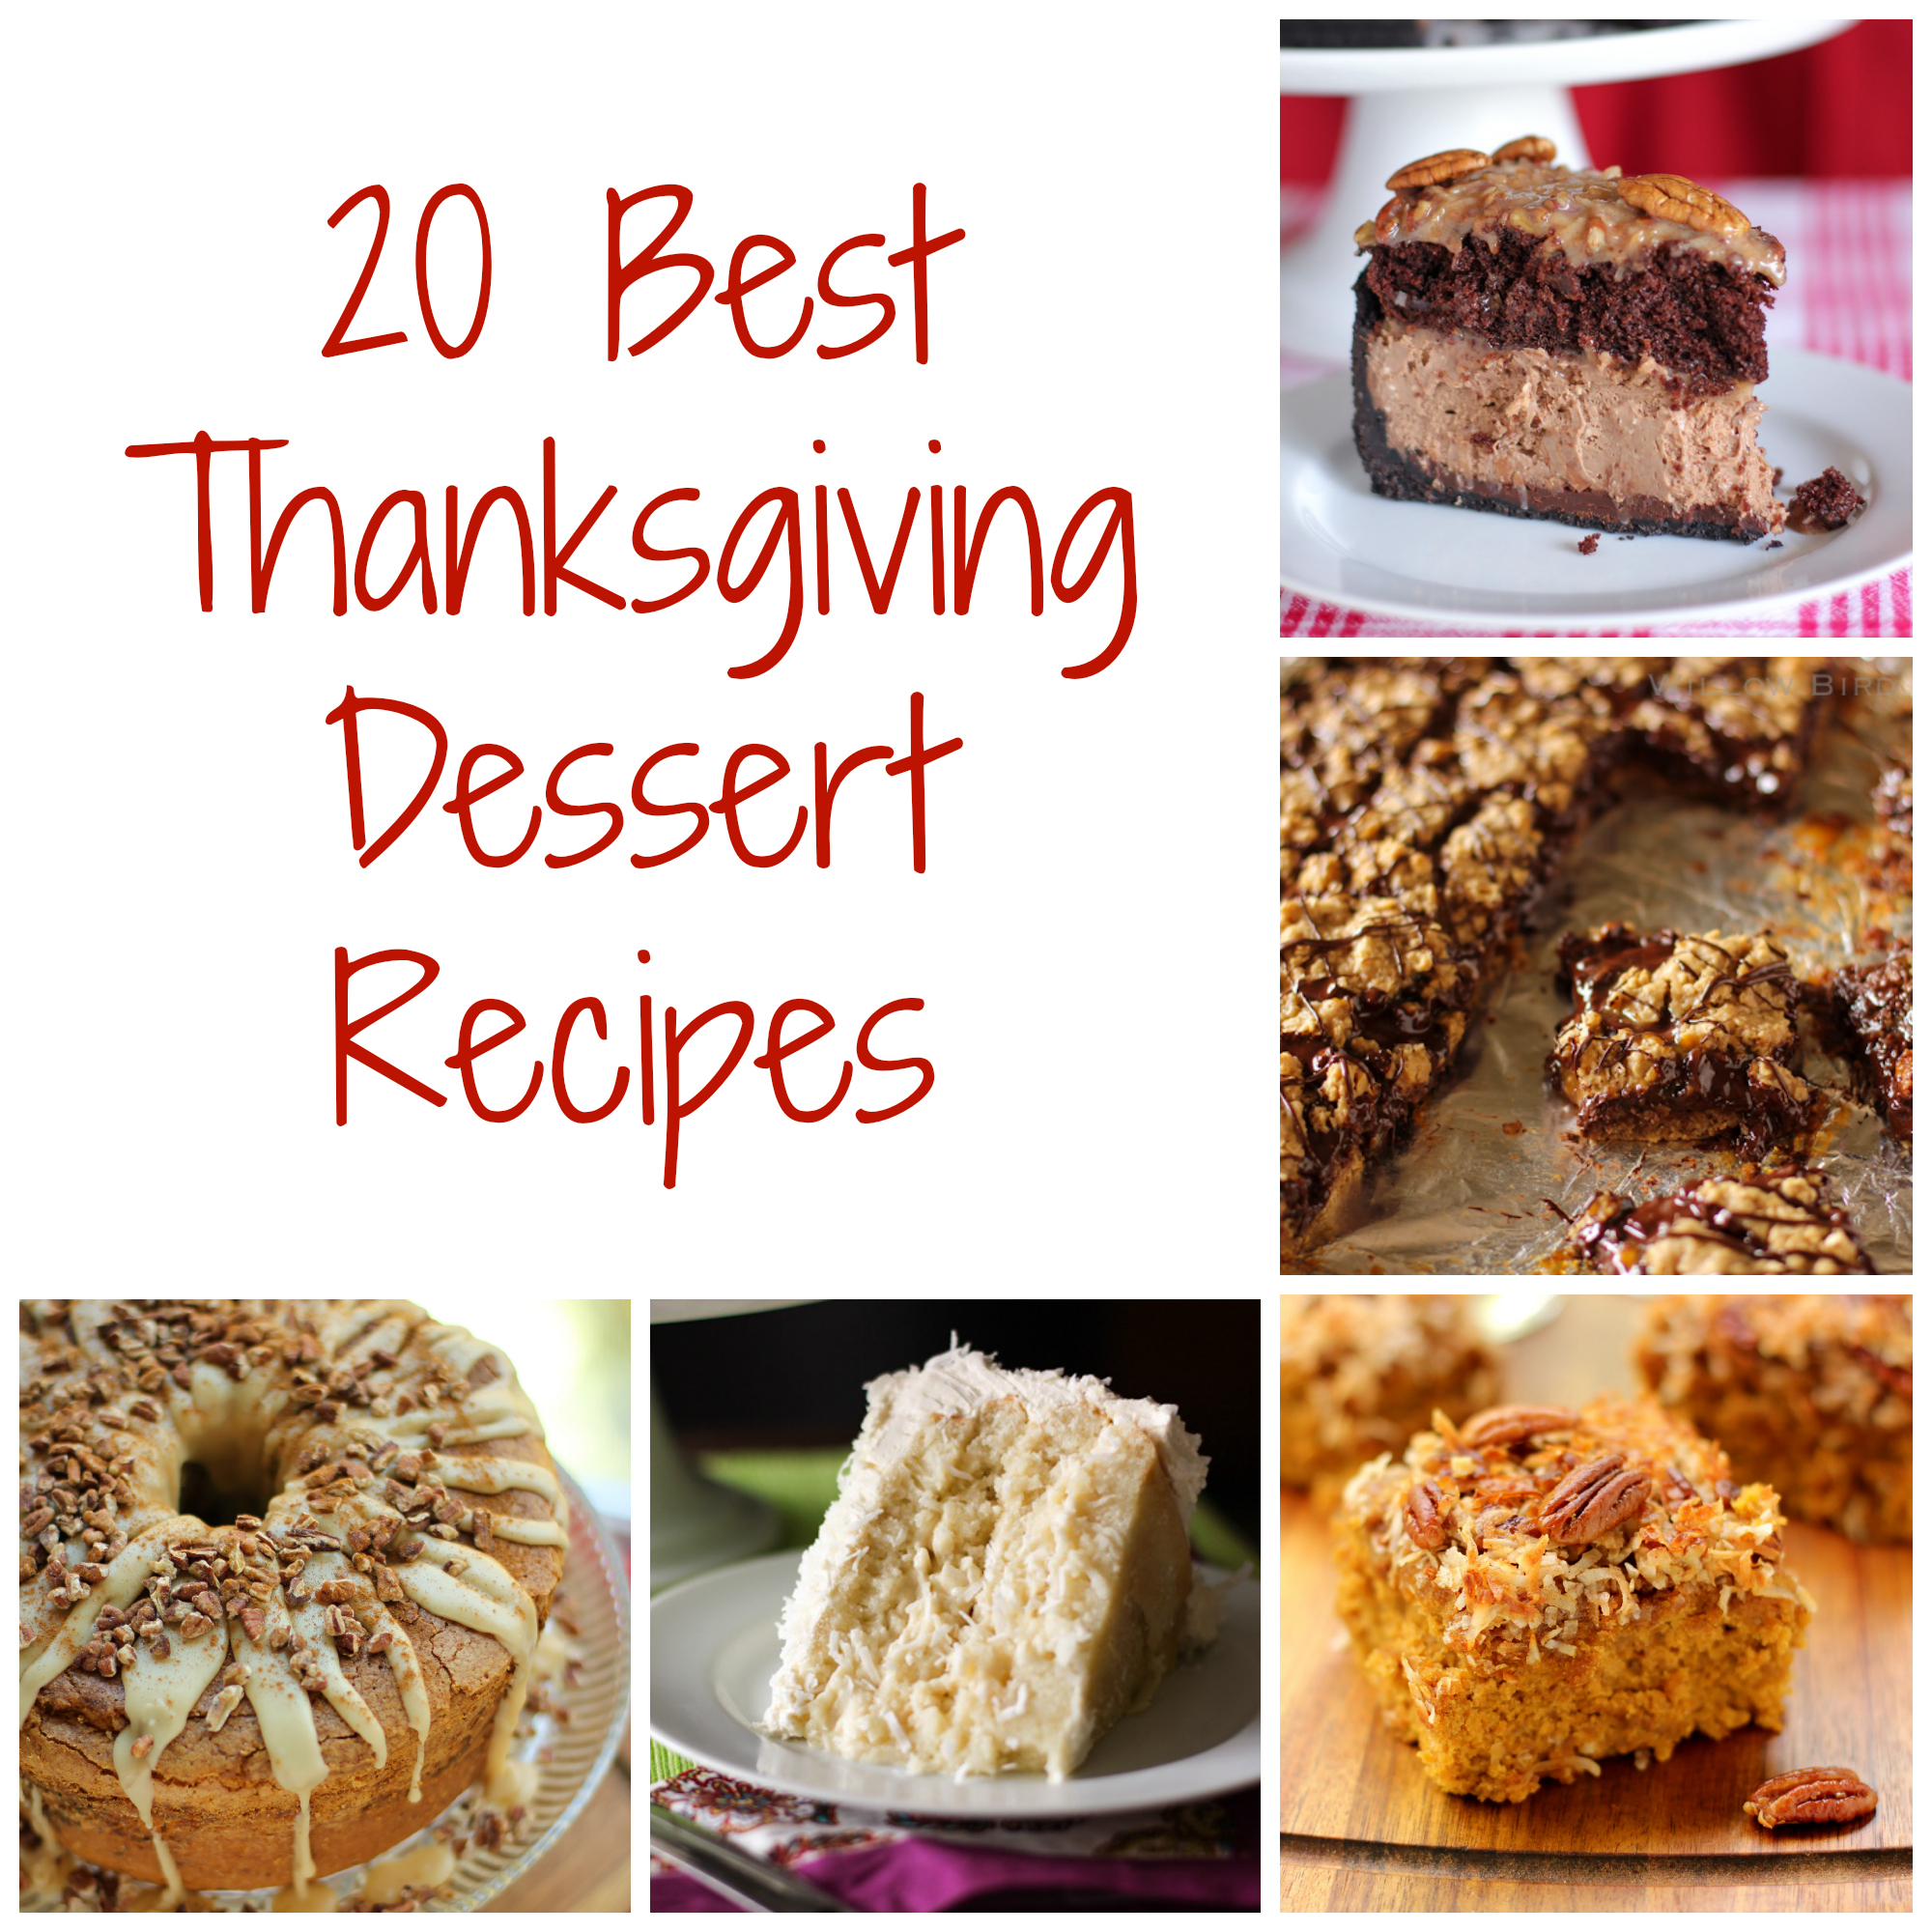 Thanksgiving Dessert Recipes - Willow Bird Baking